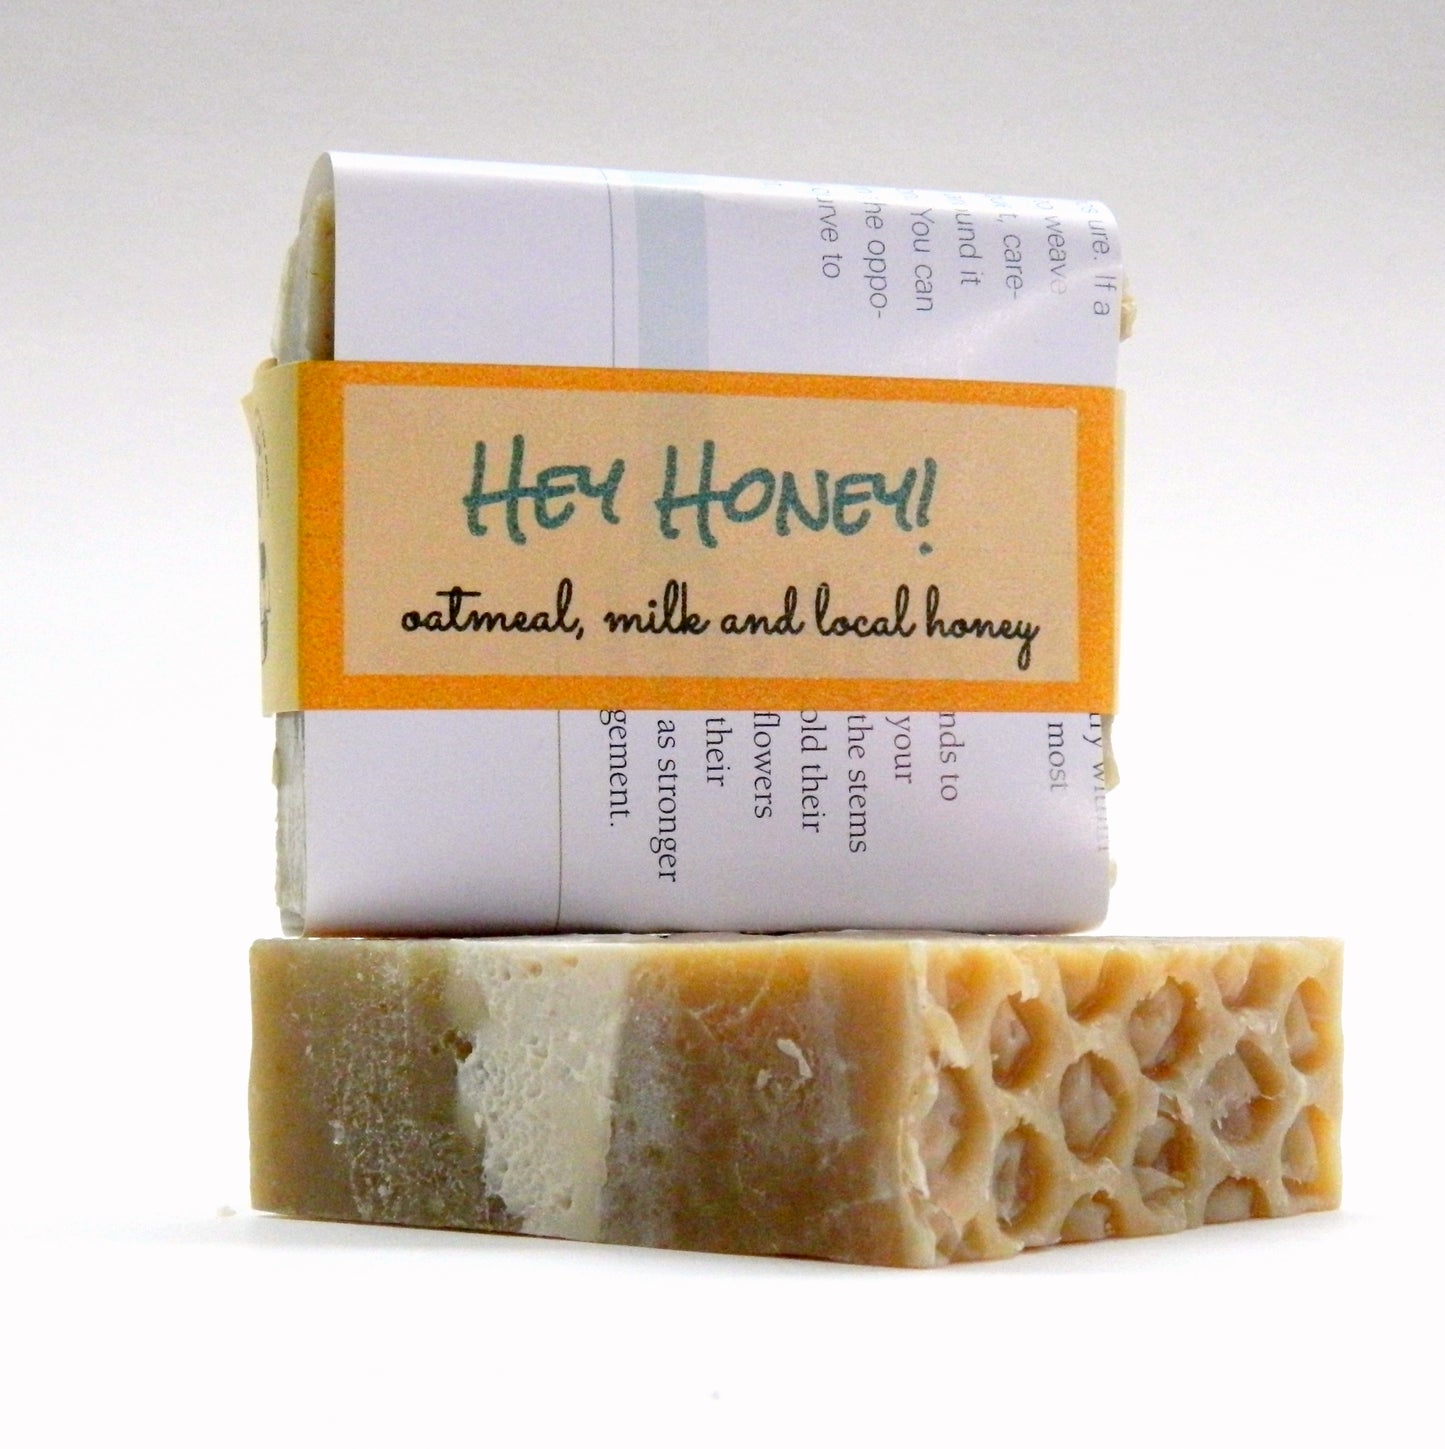 HEY HONEY! Oatmeal Milk and Honey handmade soap